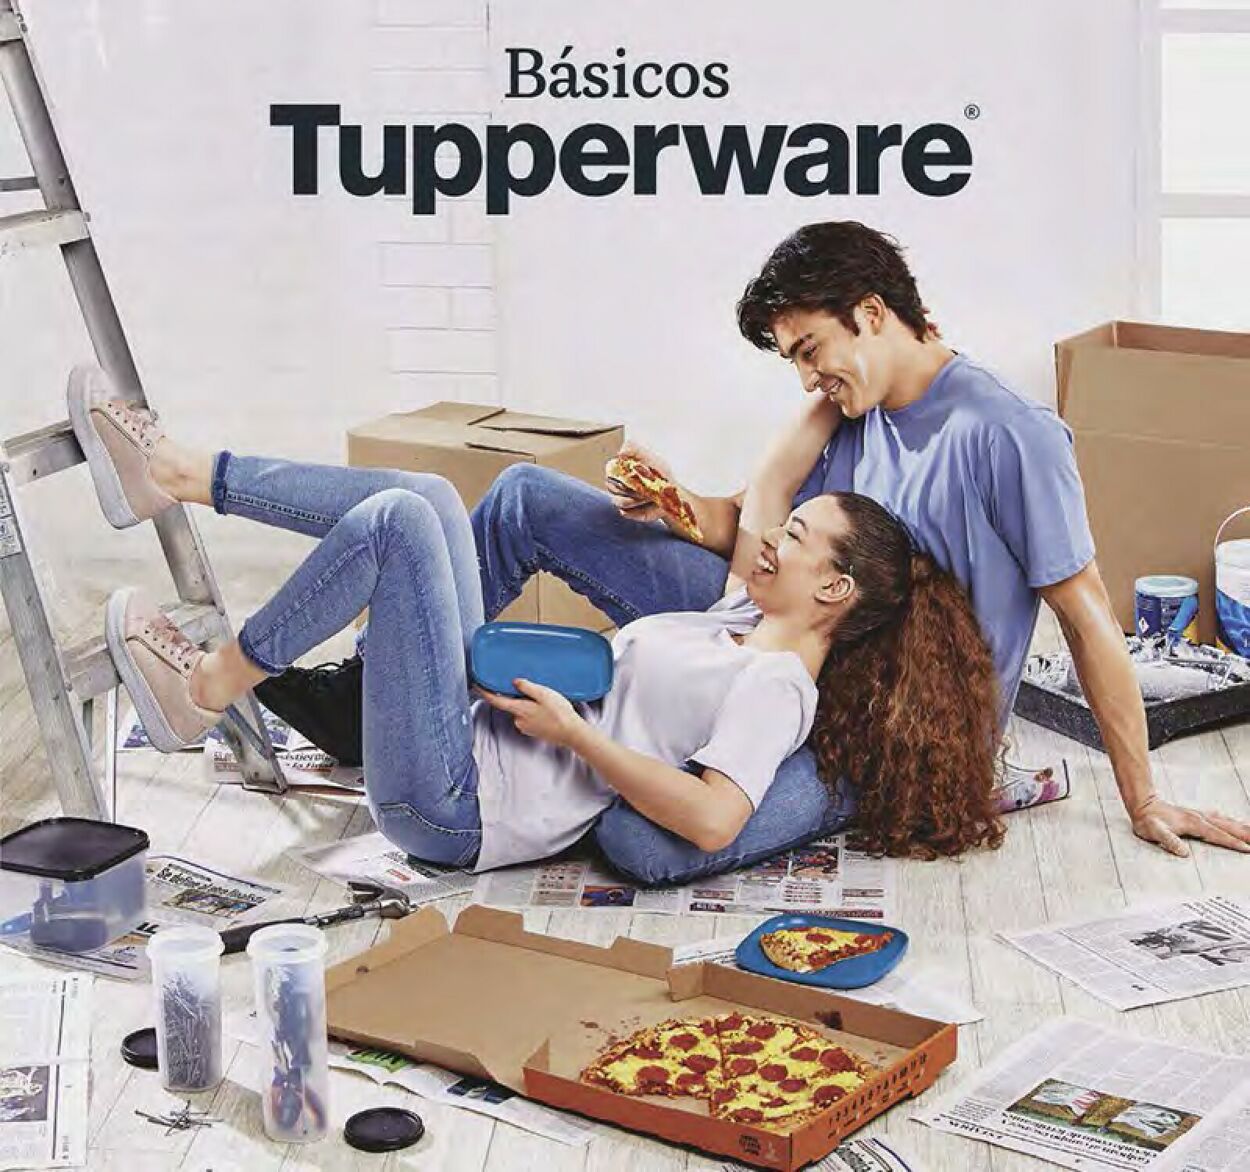 Tupperware Catálogo desde 05.09.2022